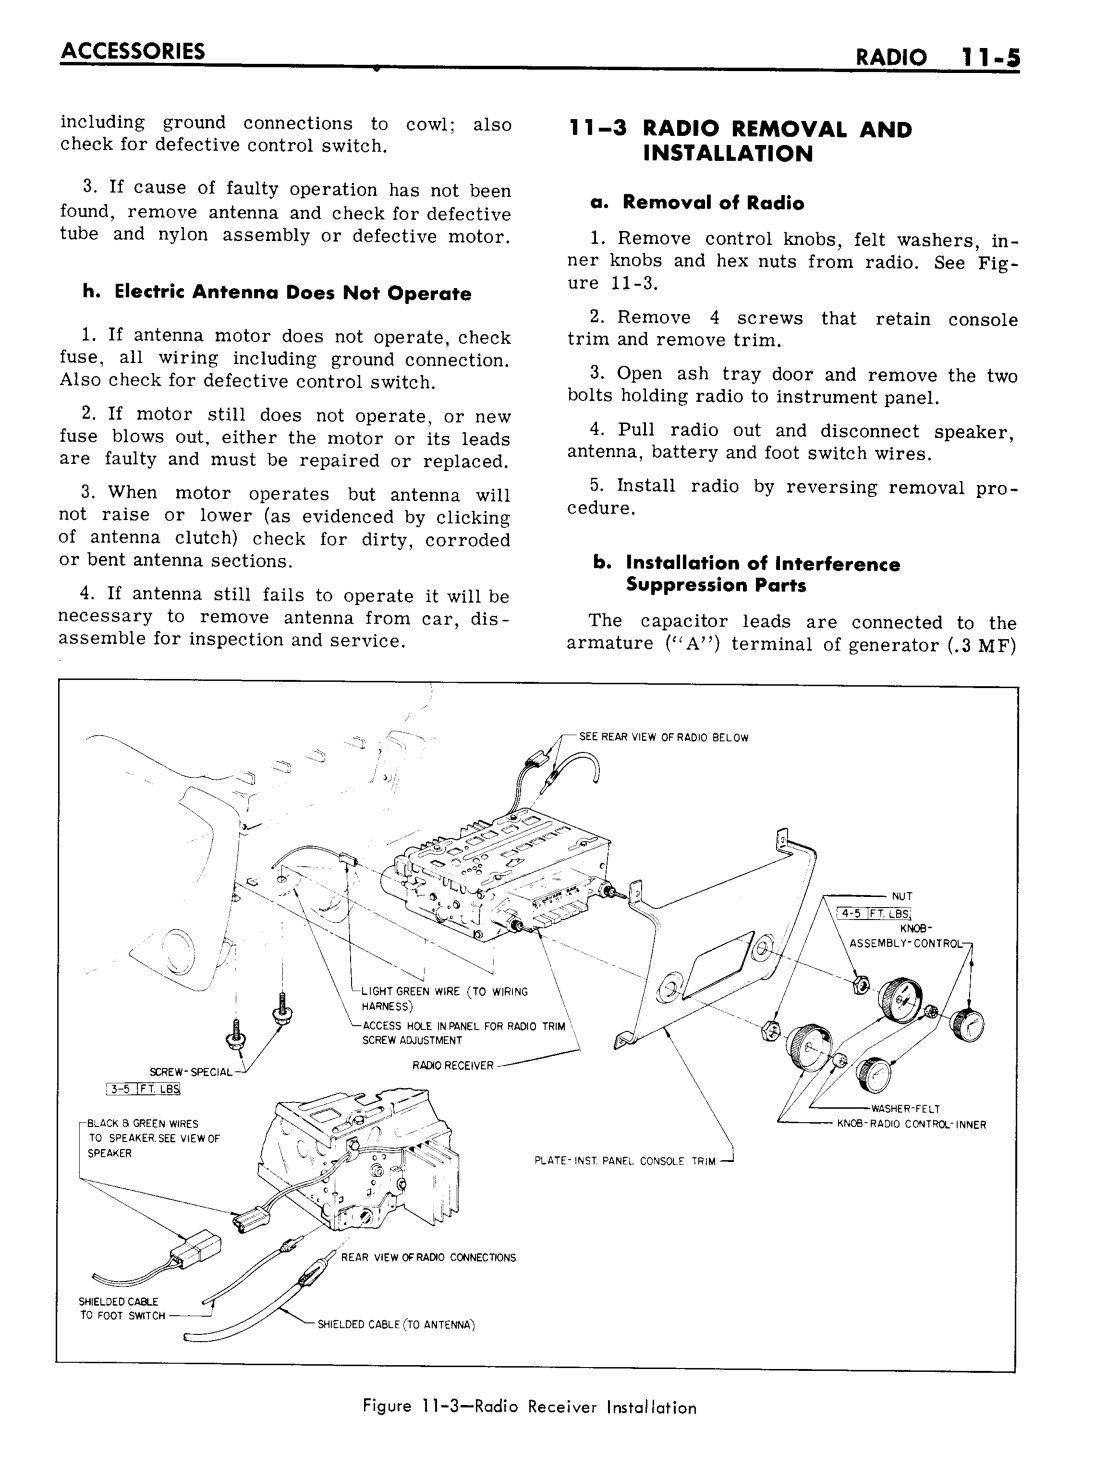 n_11 1961 Buick Shop Manual - Accessories-005-005.jpg